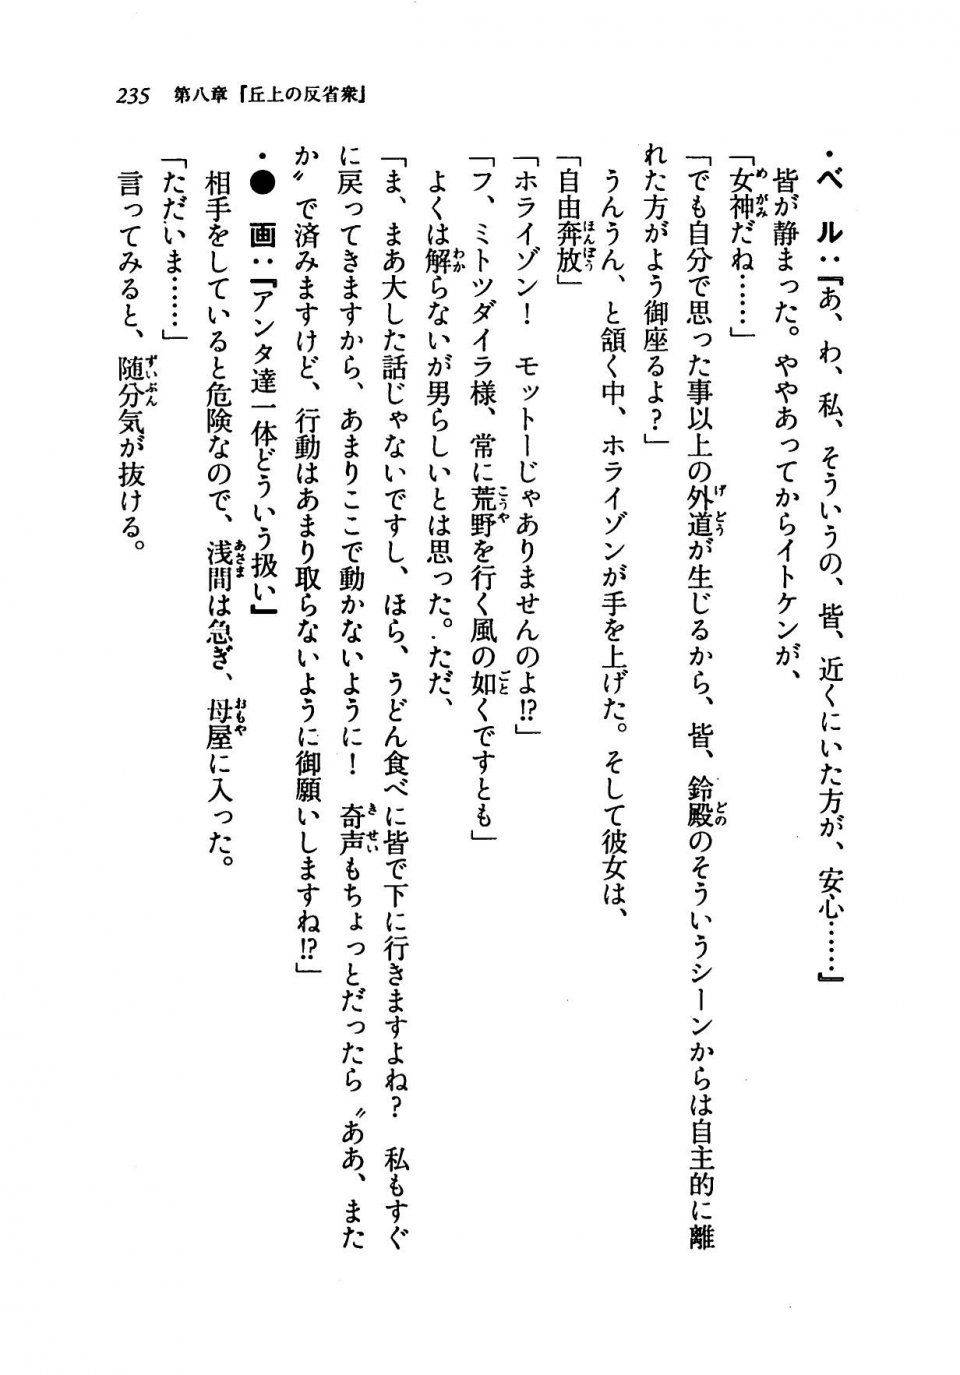 Kyoukai Senjou no Horizon LN Vol 19(8A) - Photo #235